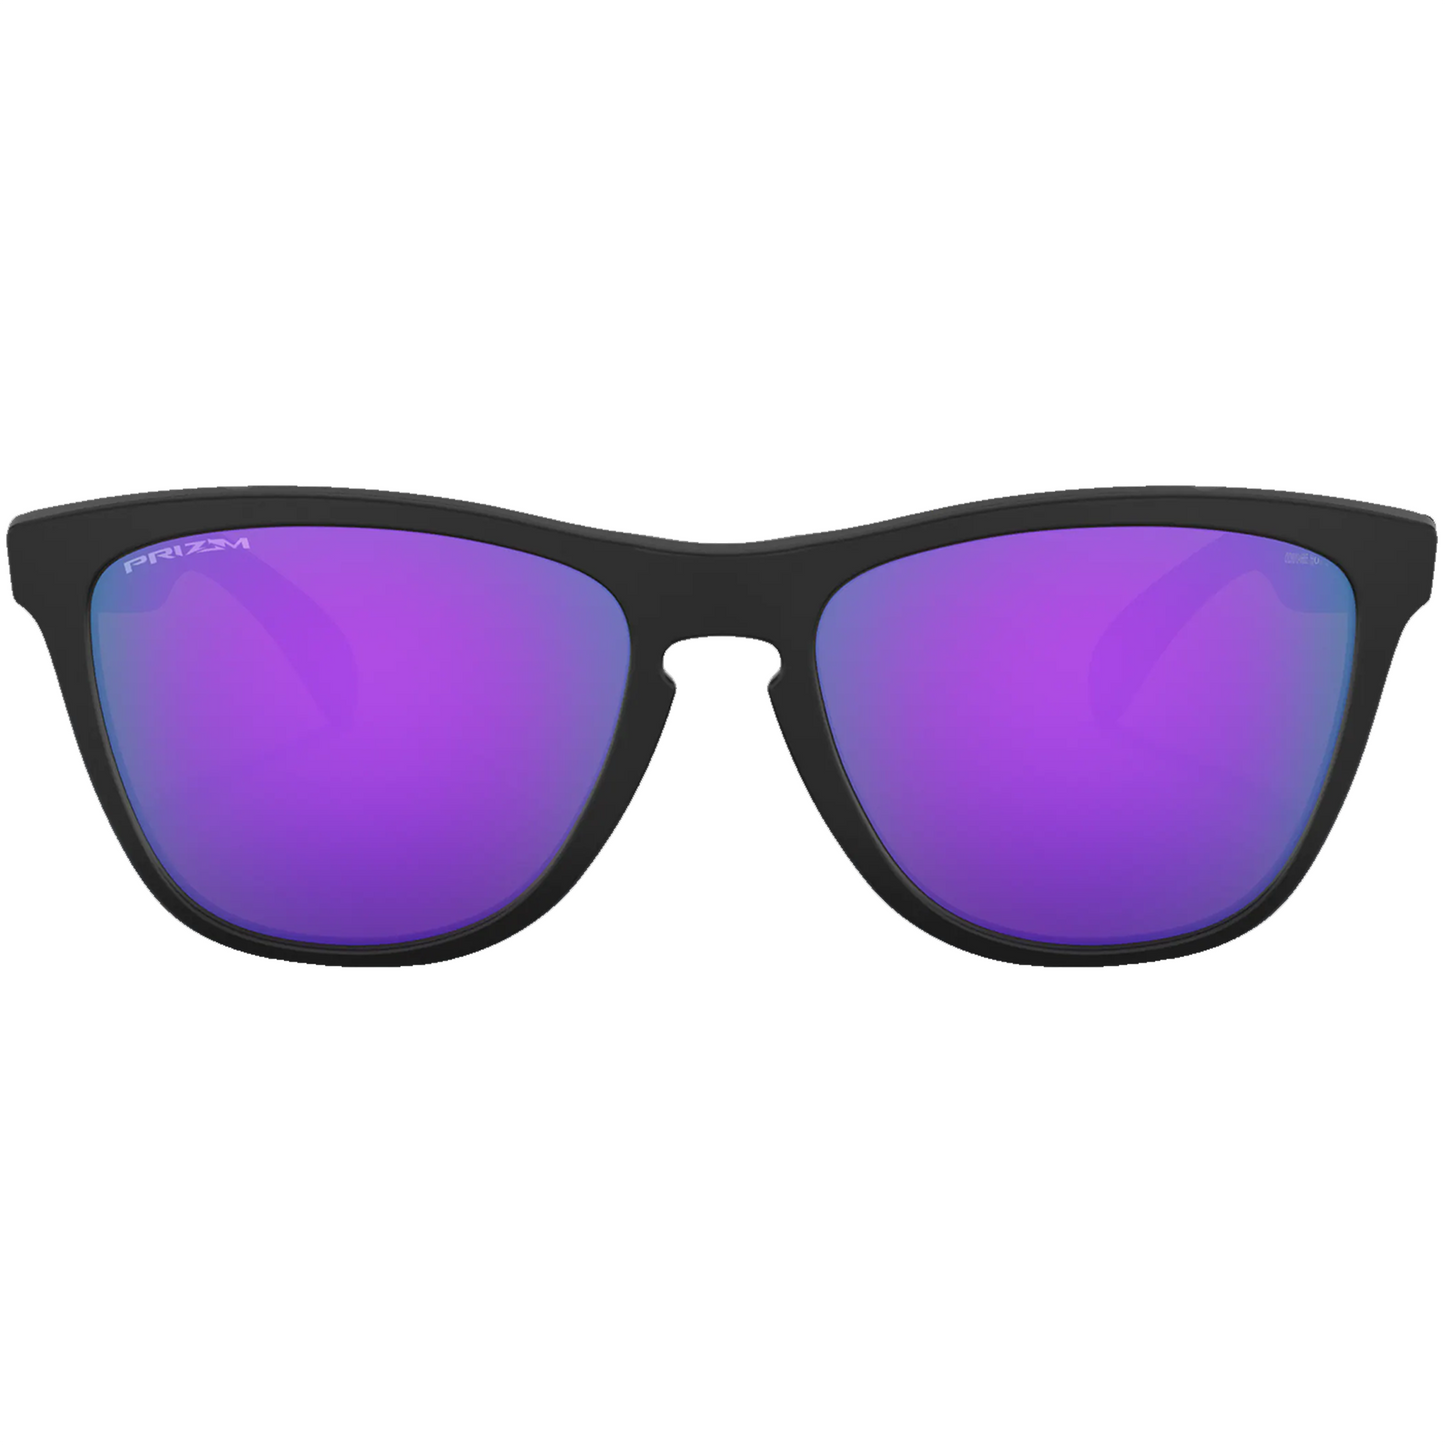 Oakley Frogskins Sunglasses (Matte Black) Prizm Violet Lens